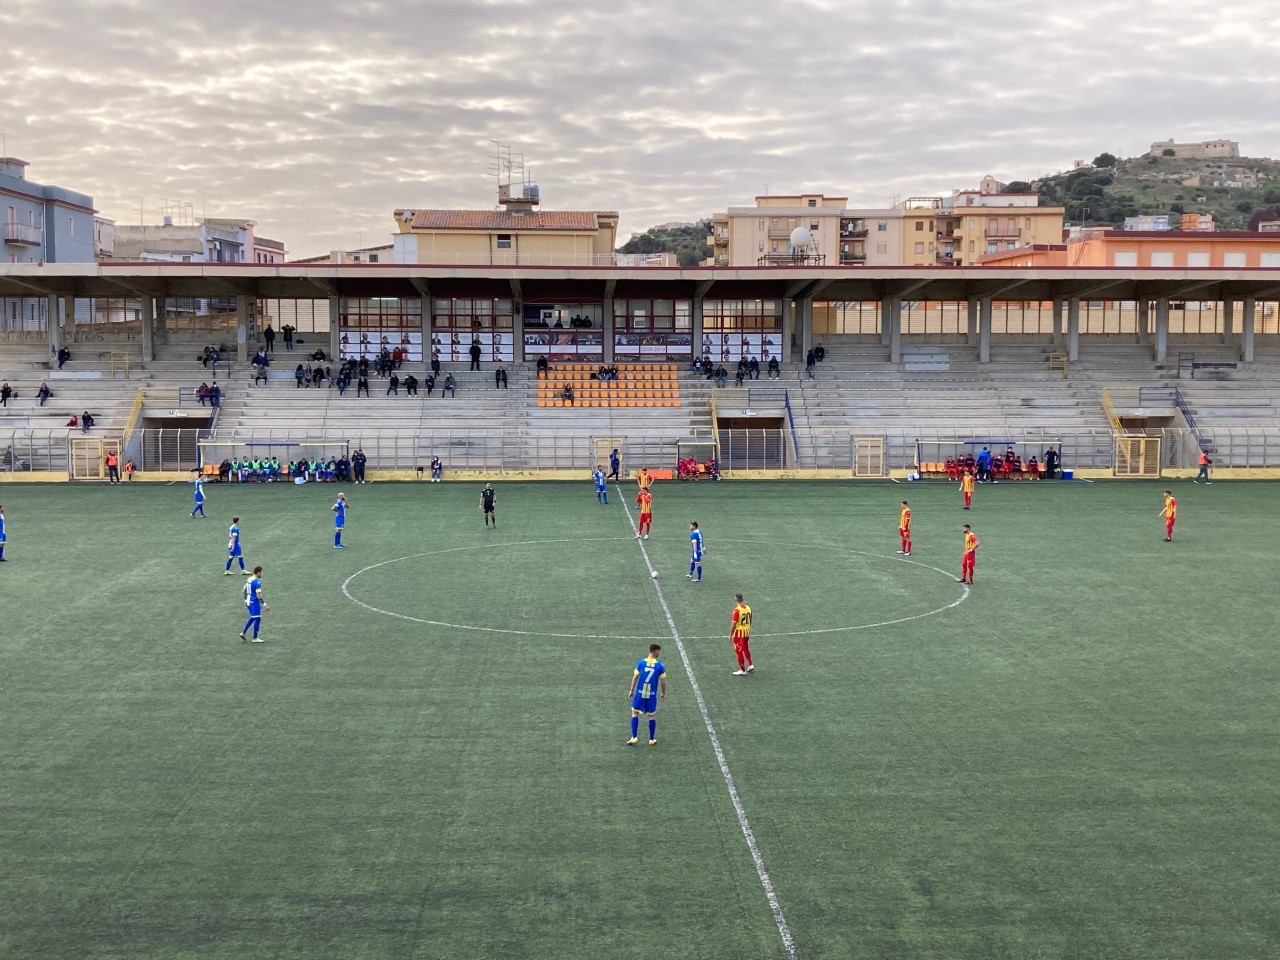 Licata 1-1 Polisportiva Santa Maria, la sintesi